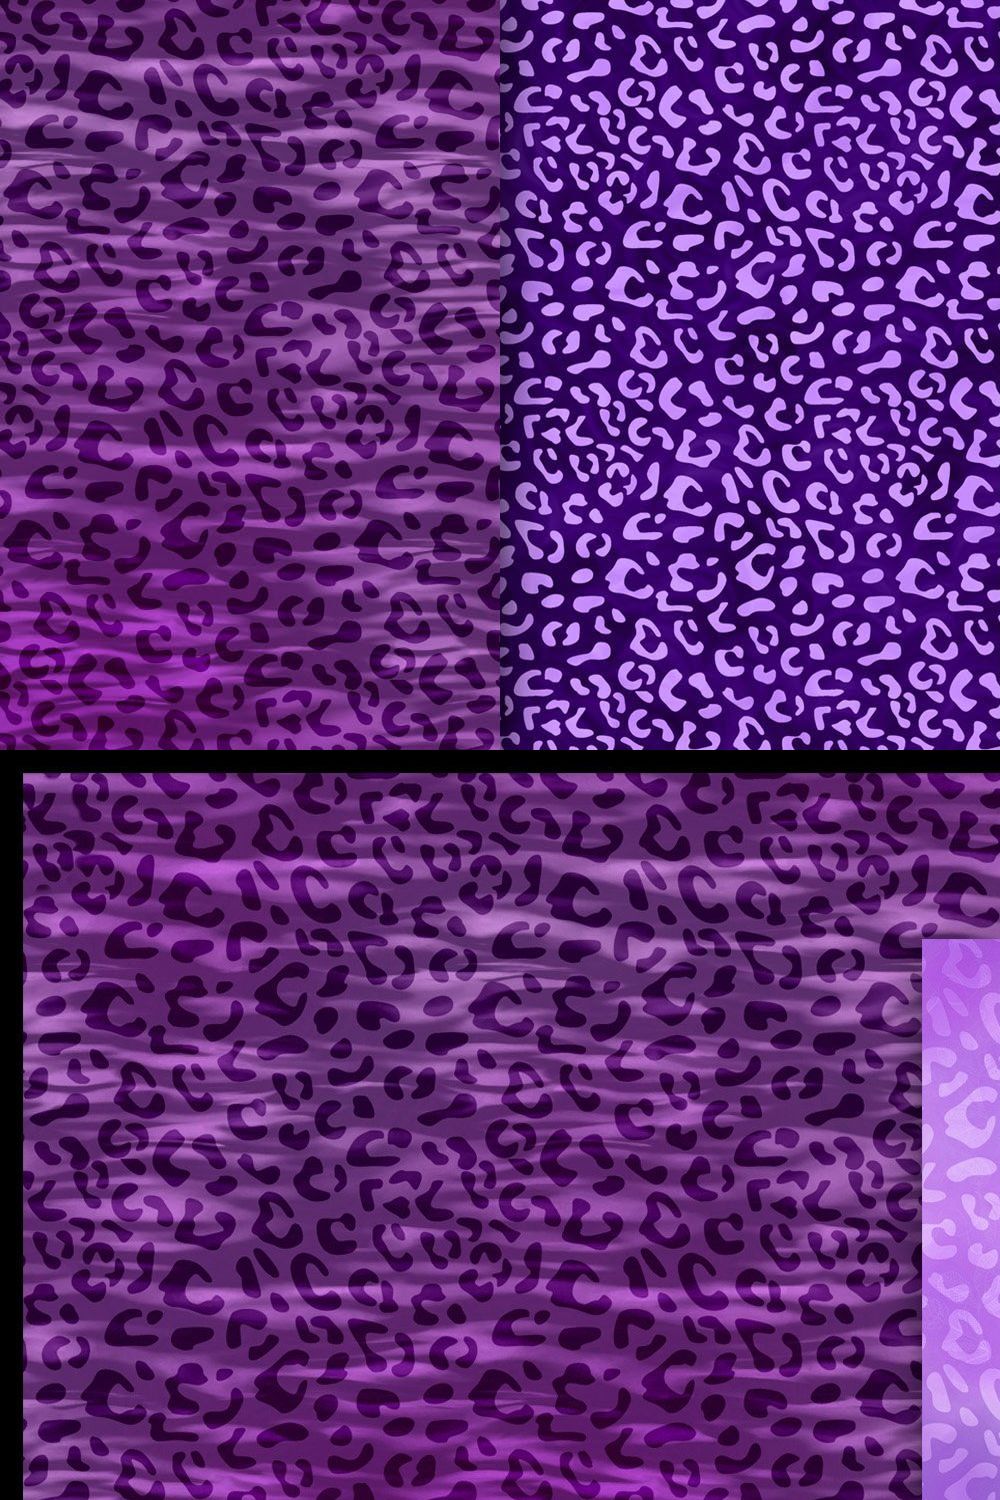 Purple Leopard Print Backgrounds pinterest preview image.